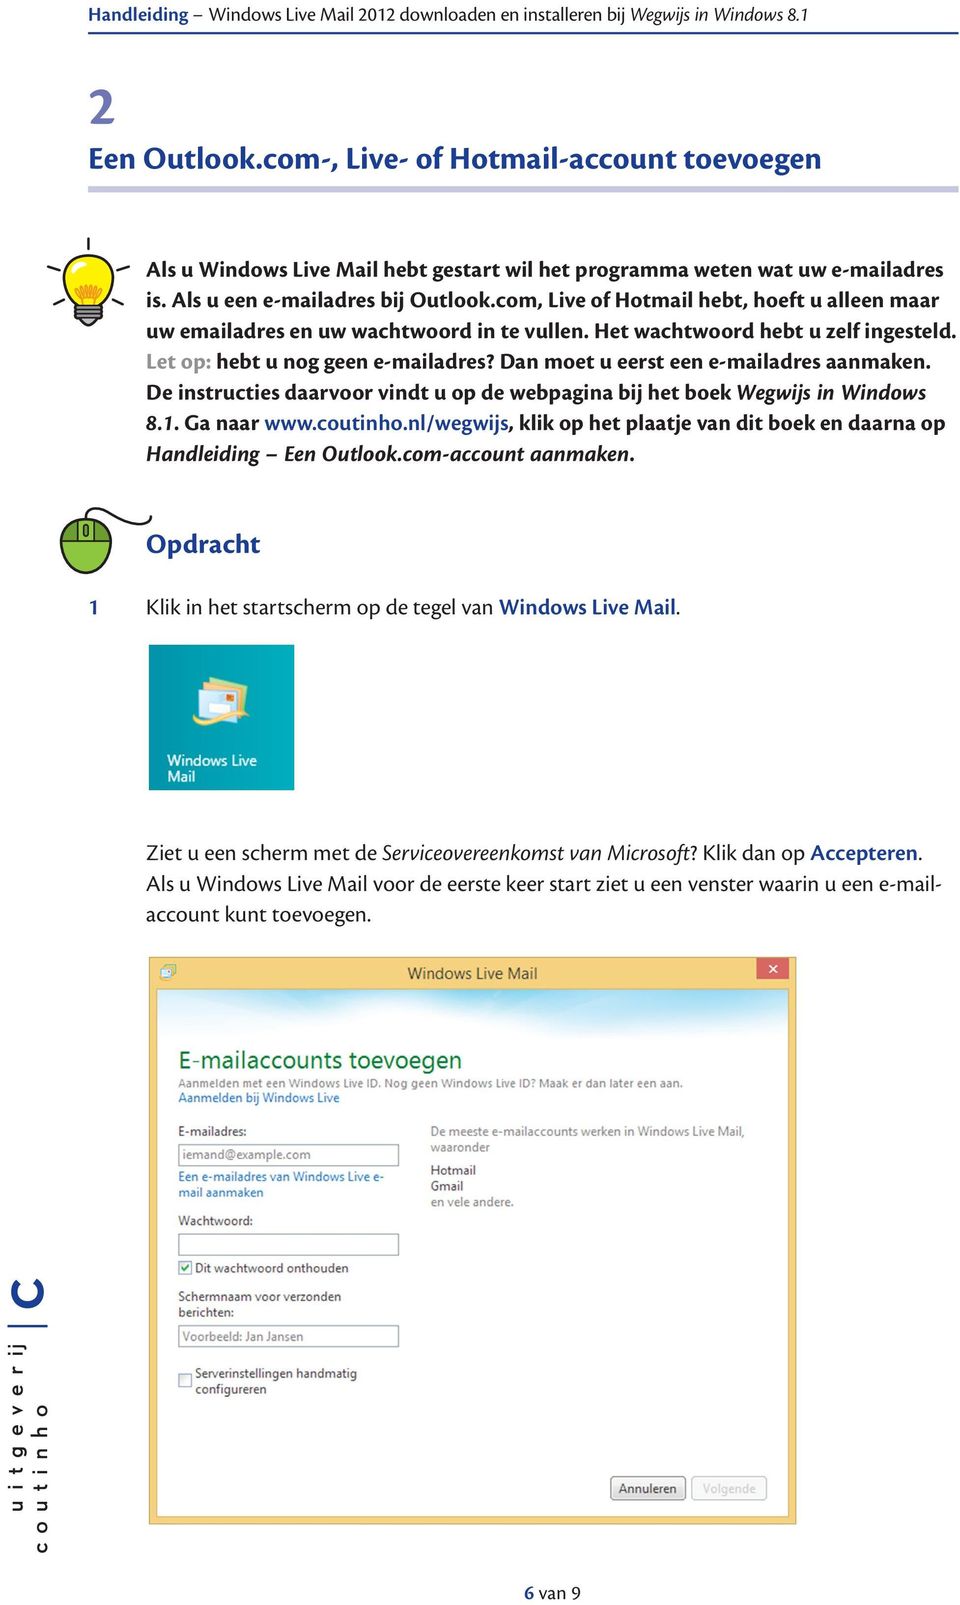 Dan moet u eerst een e-mailadres aanmaken. De instructies daarvoor vindt u op de webpagina bij het boek Wegwijs in Windows 8.1. Ga naar www.coutinho.